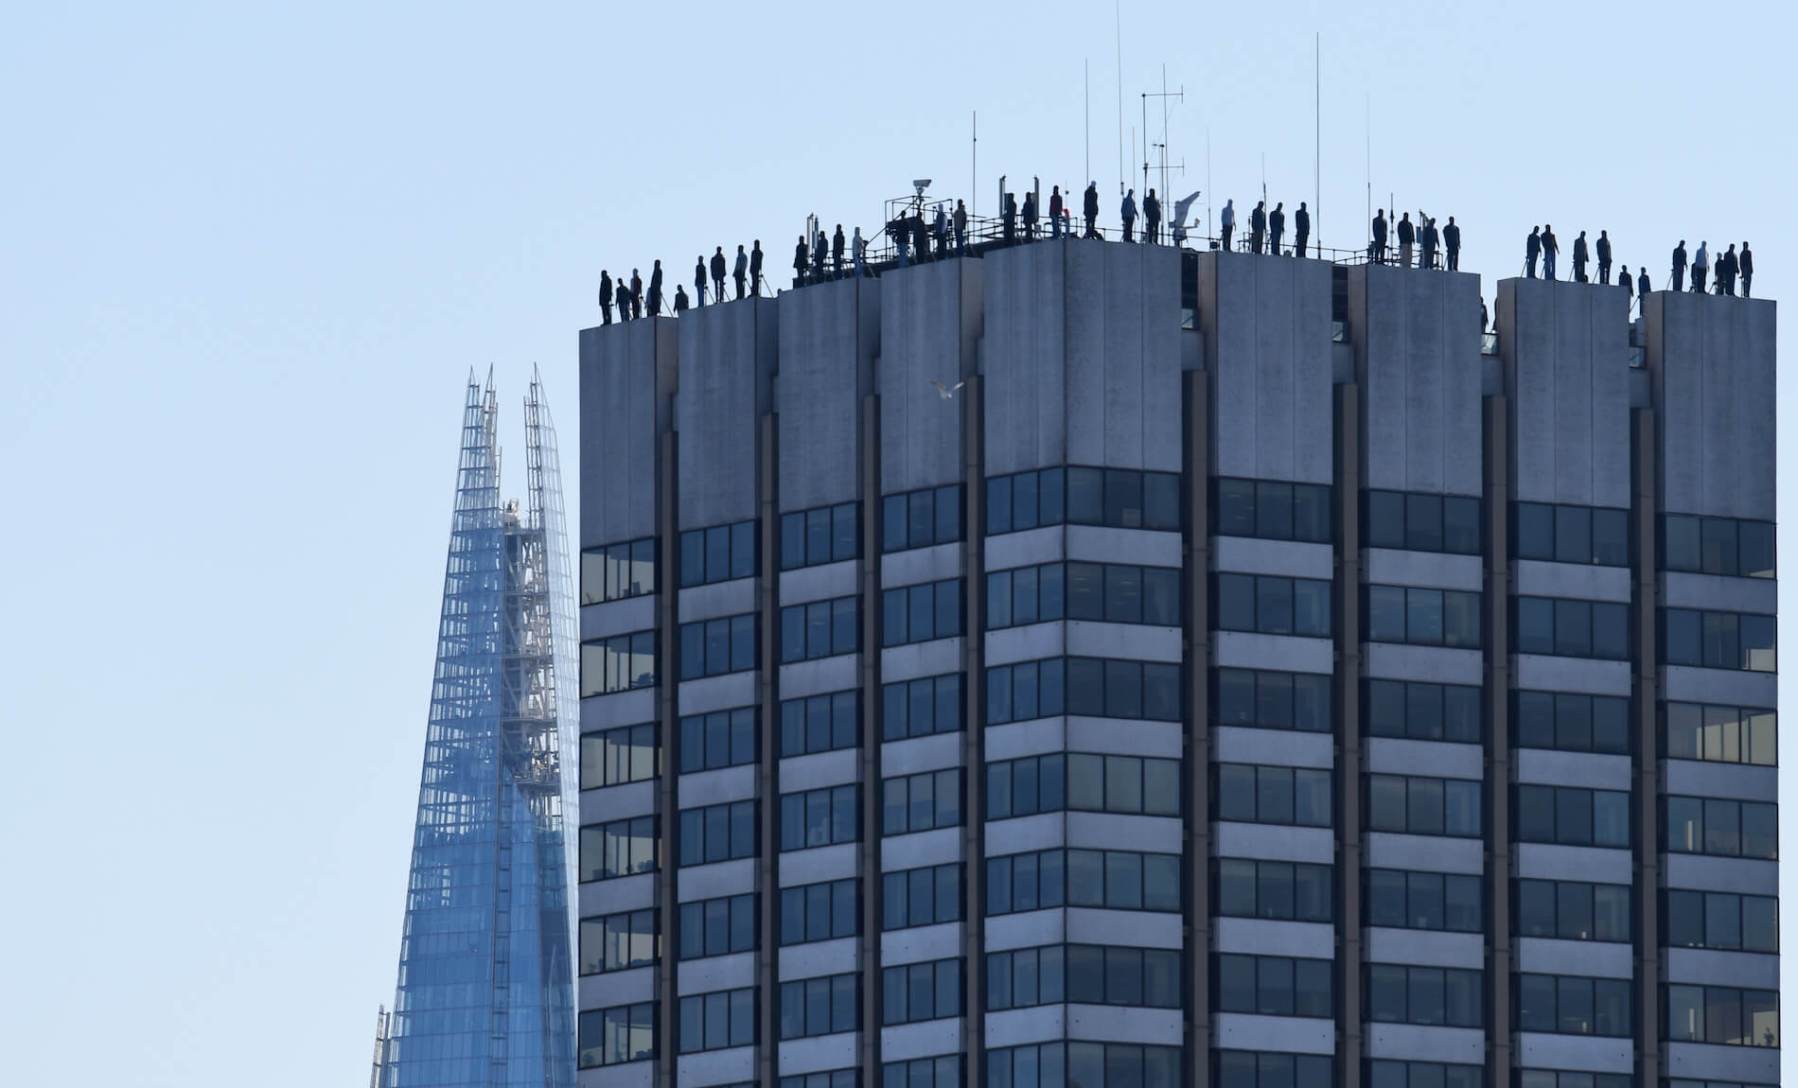 Mark-Jenkins-suicide-awareness-calm-london-rooftops-84-sculptures-29.jpg